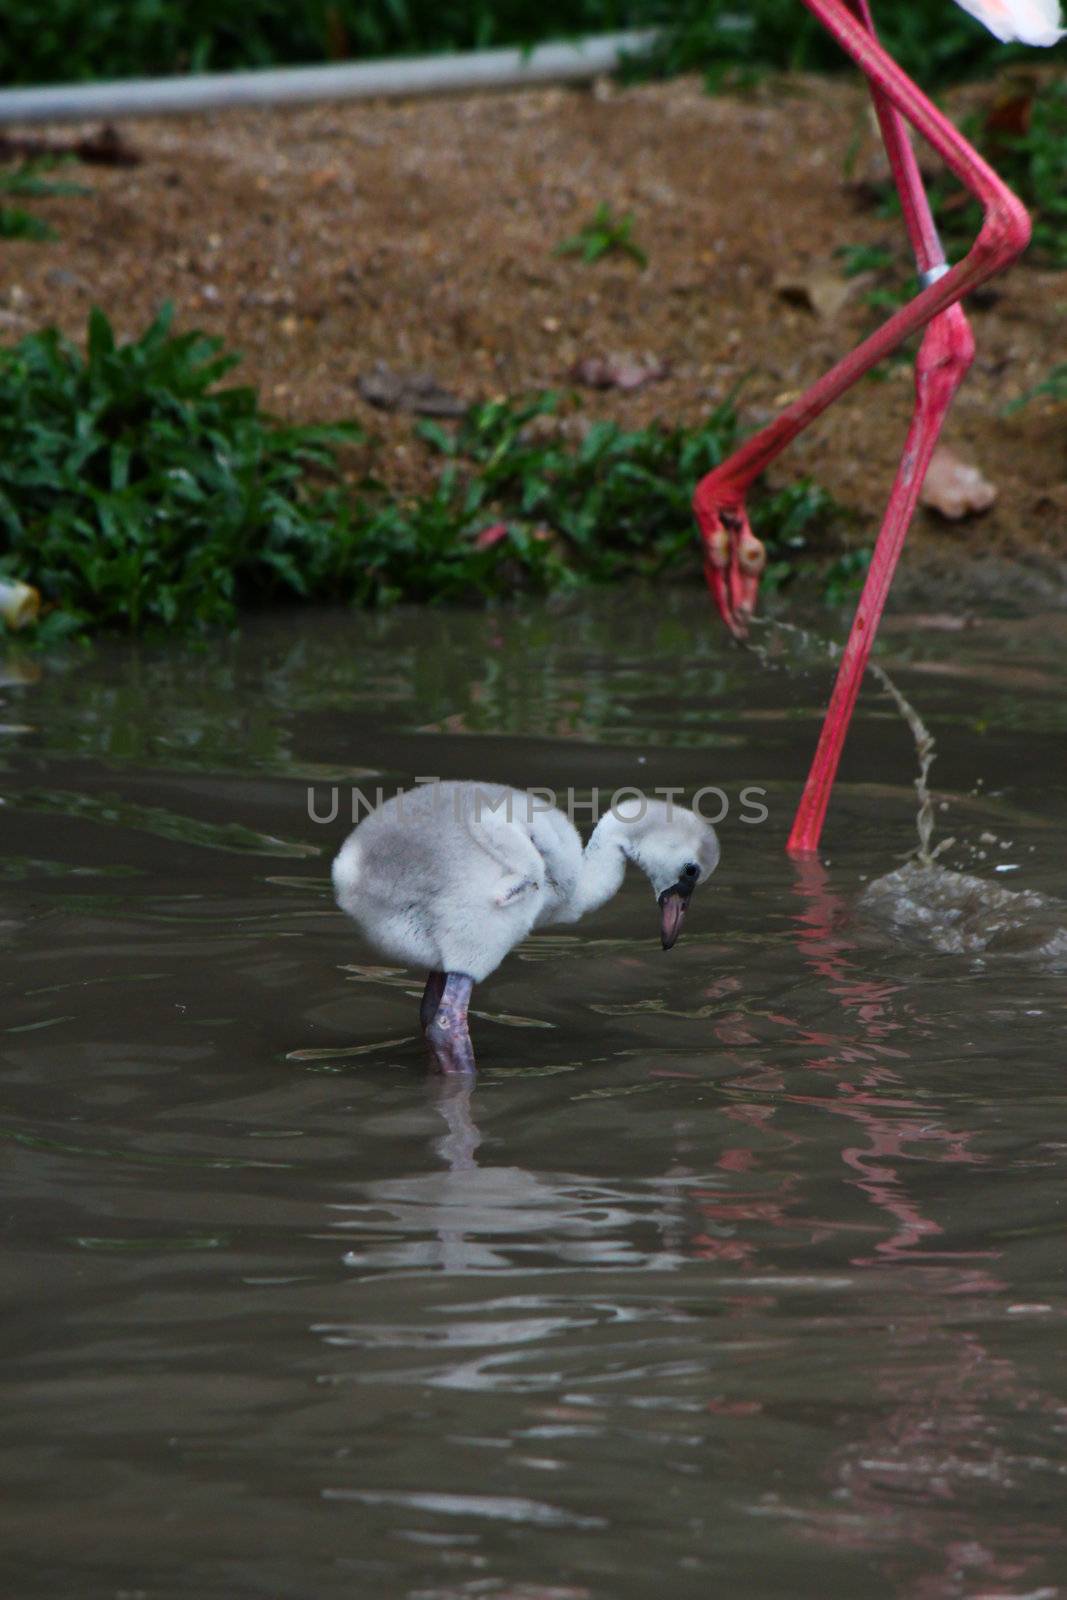 baby pink flamingos (Phoenicopterus ruber ruber)